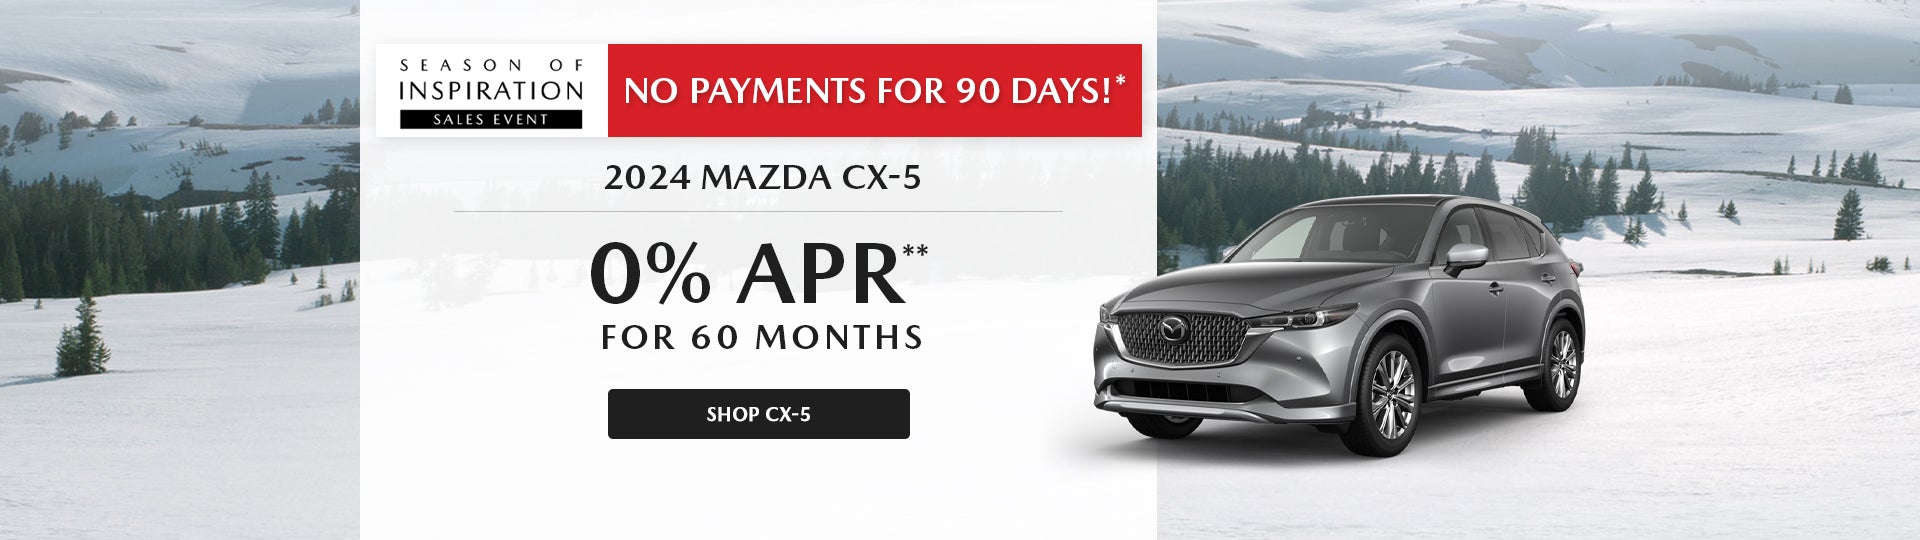 2024 Mazda CX-5 0% APR